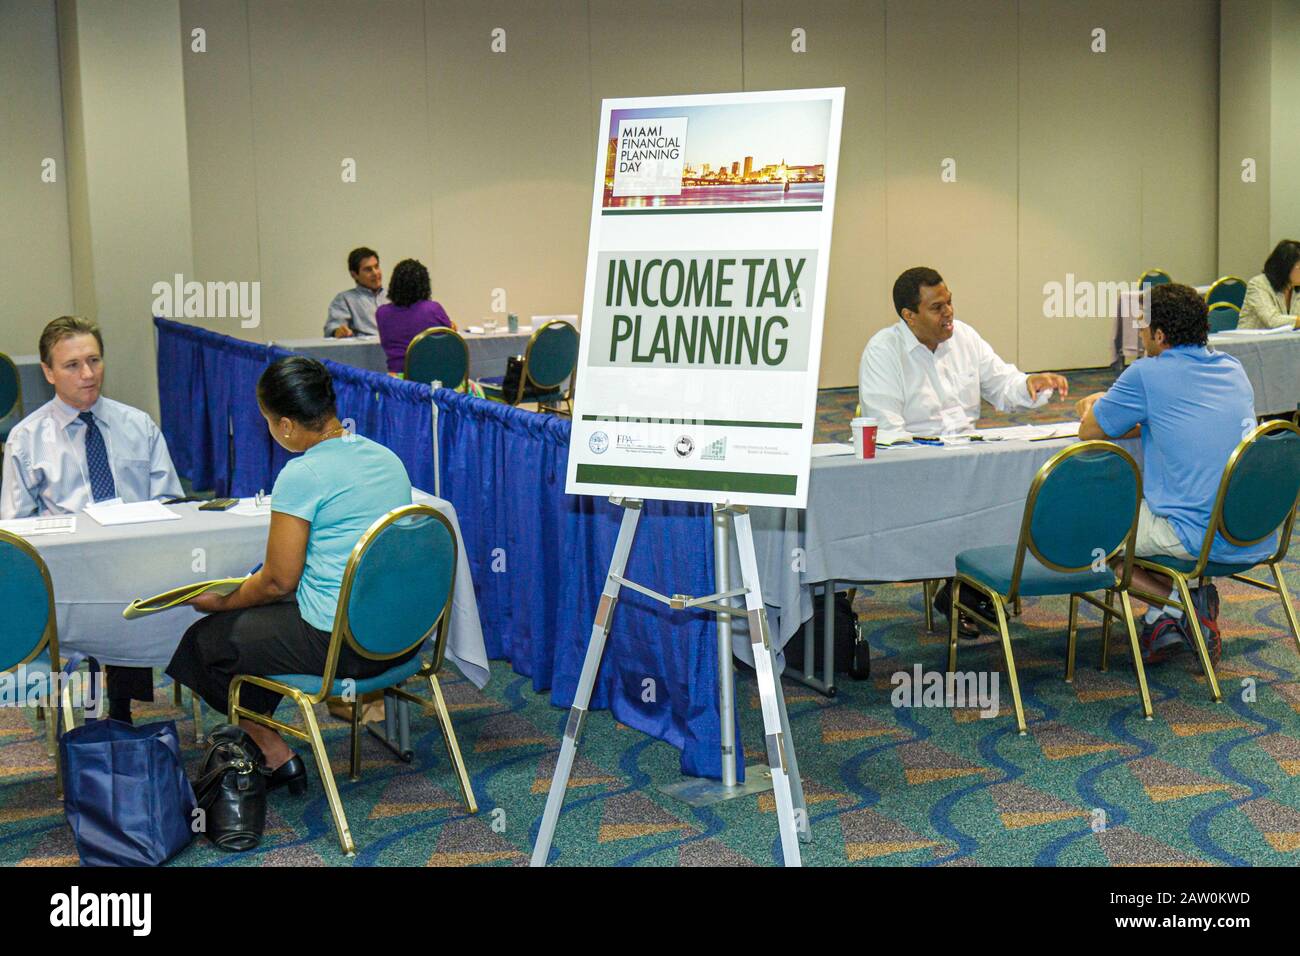 Miami Florida,James L. Knight Convention Center,Miami Financial Planning Day,conseils gratuits,planificateurs guidanceal,panneau,planification de l'impôt sur le revenu,Black man men ma Banque D'Images